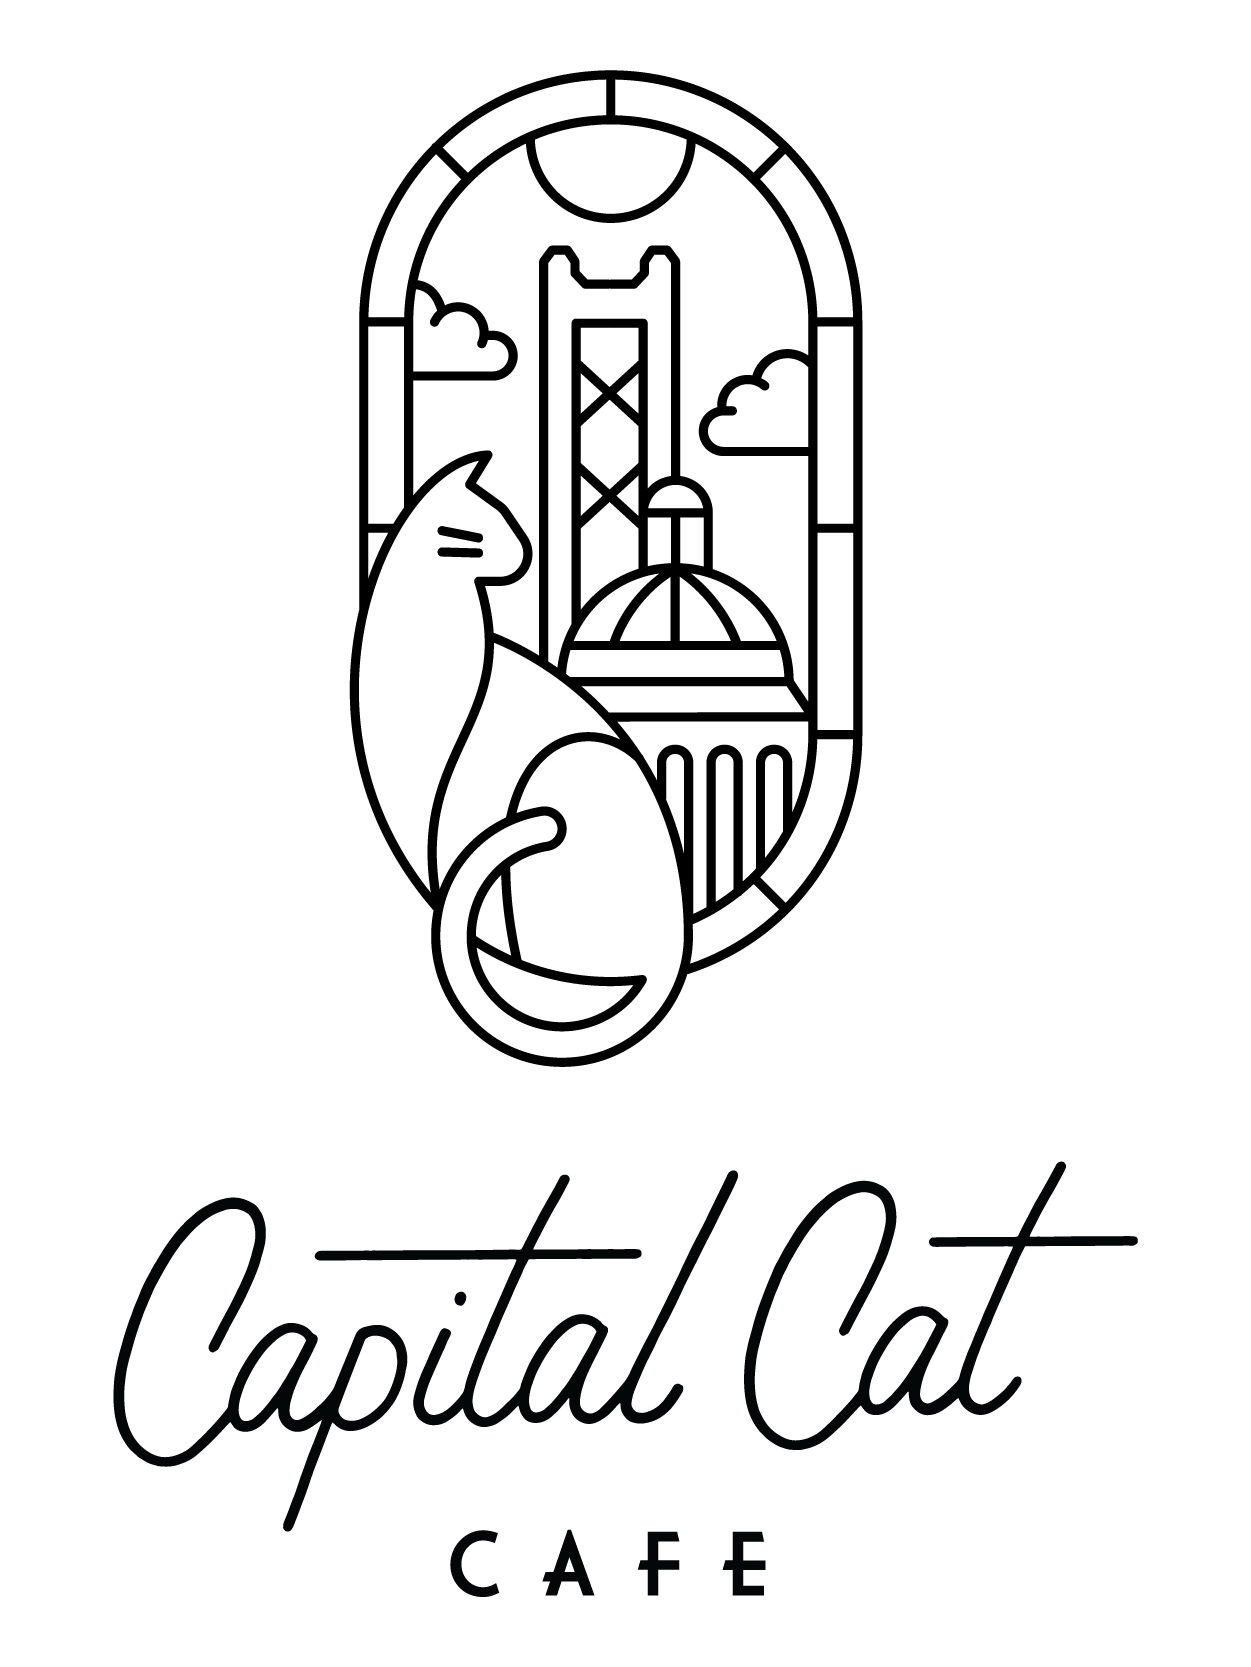 Capital Cat Cafe